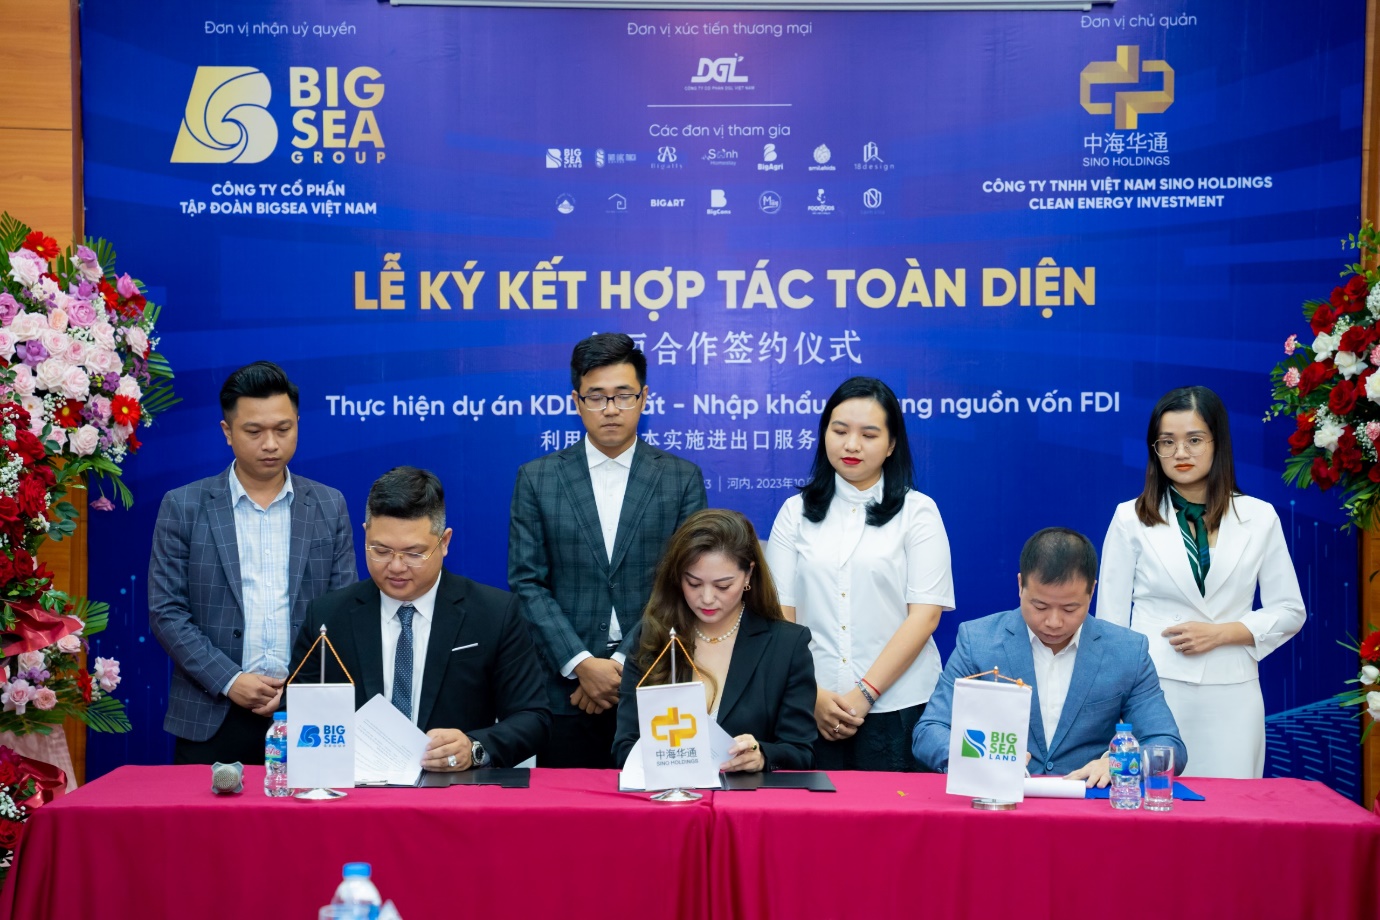 Lễ ký kết hợp tác chiến lược toàn diện giữa Bigsea Group và Vietnam Sino Holdings - 4